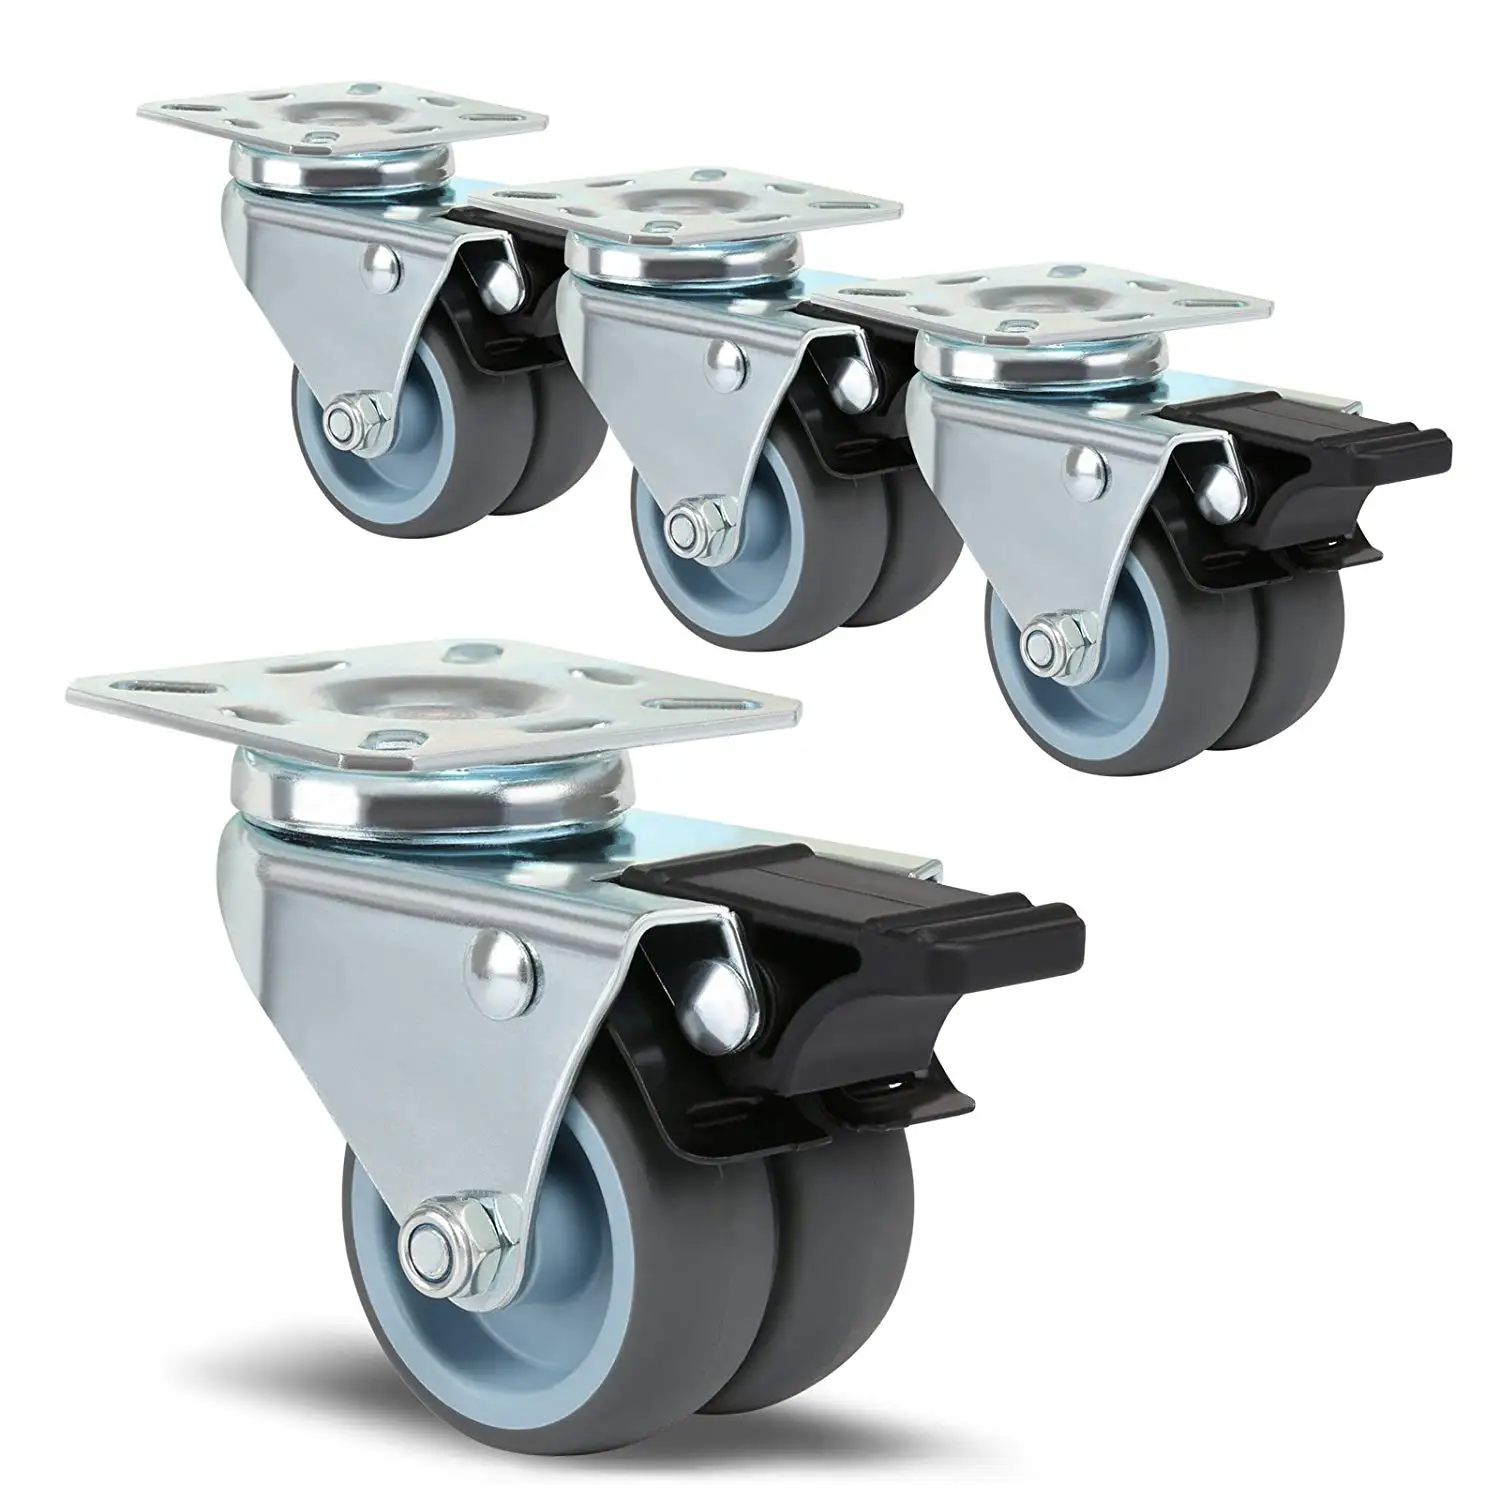 4 x Heavy Duty Swivel Castor Wheels Trolley Furniture Caster Brake​ DOUBLE LOCK 